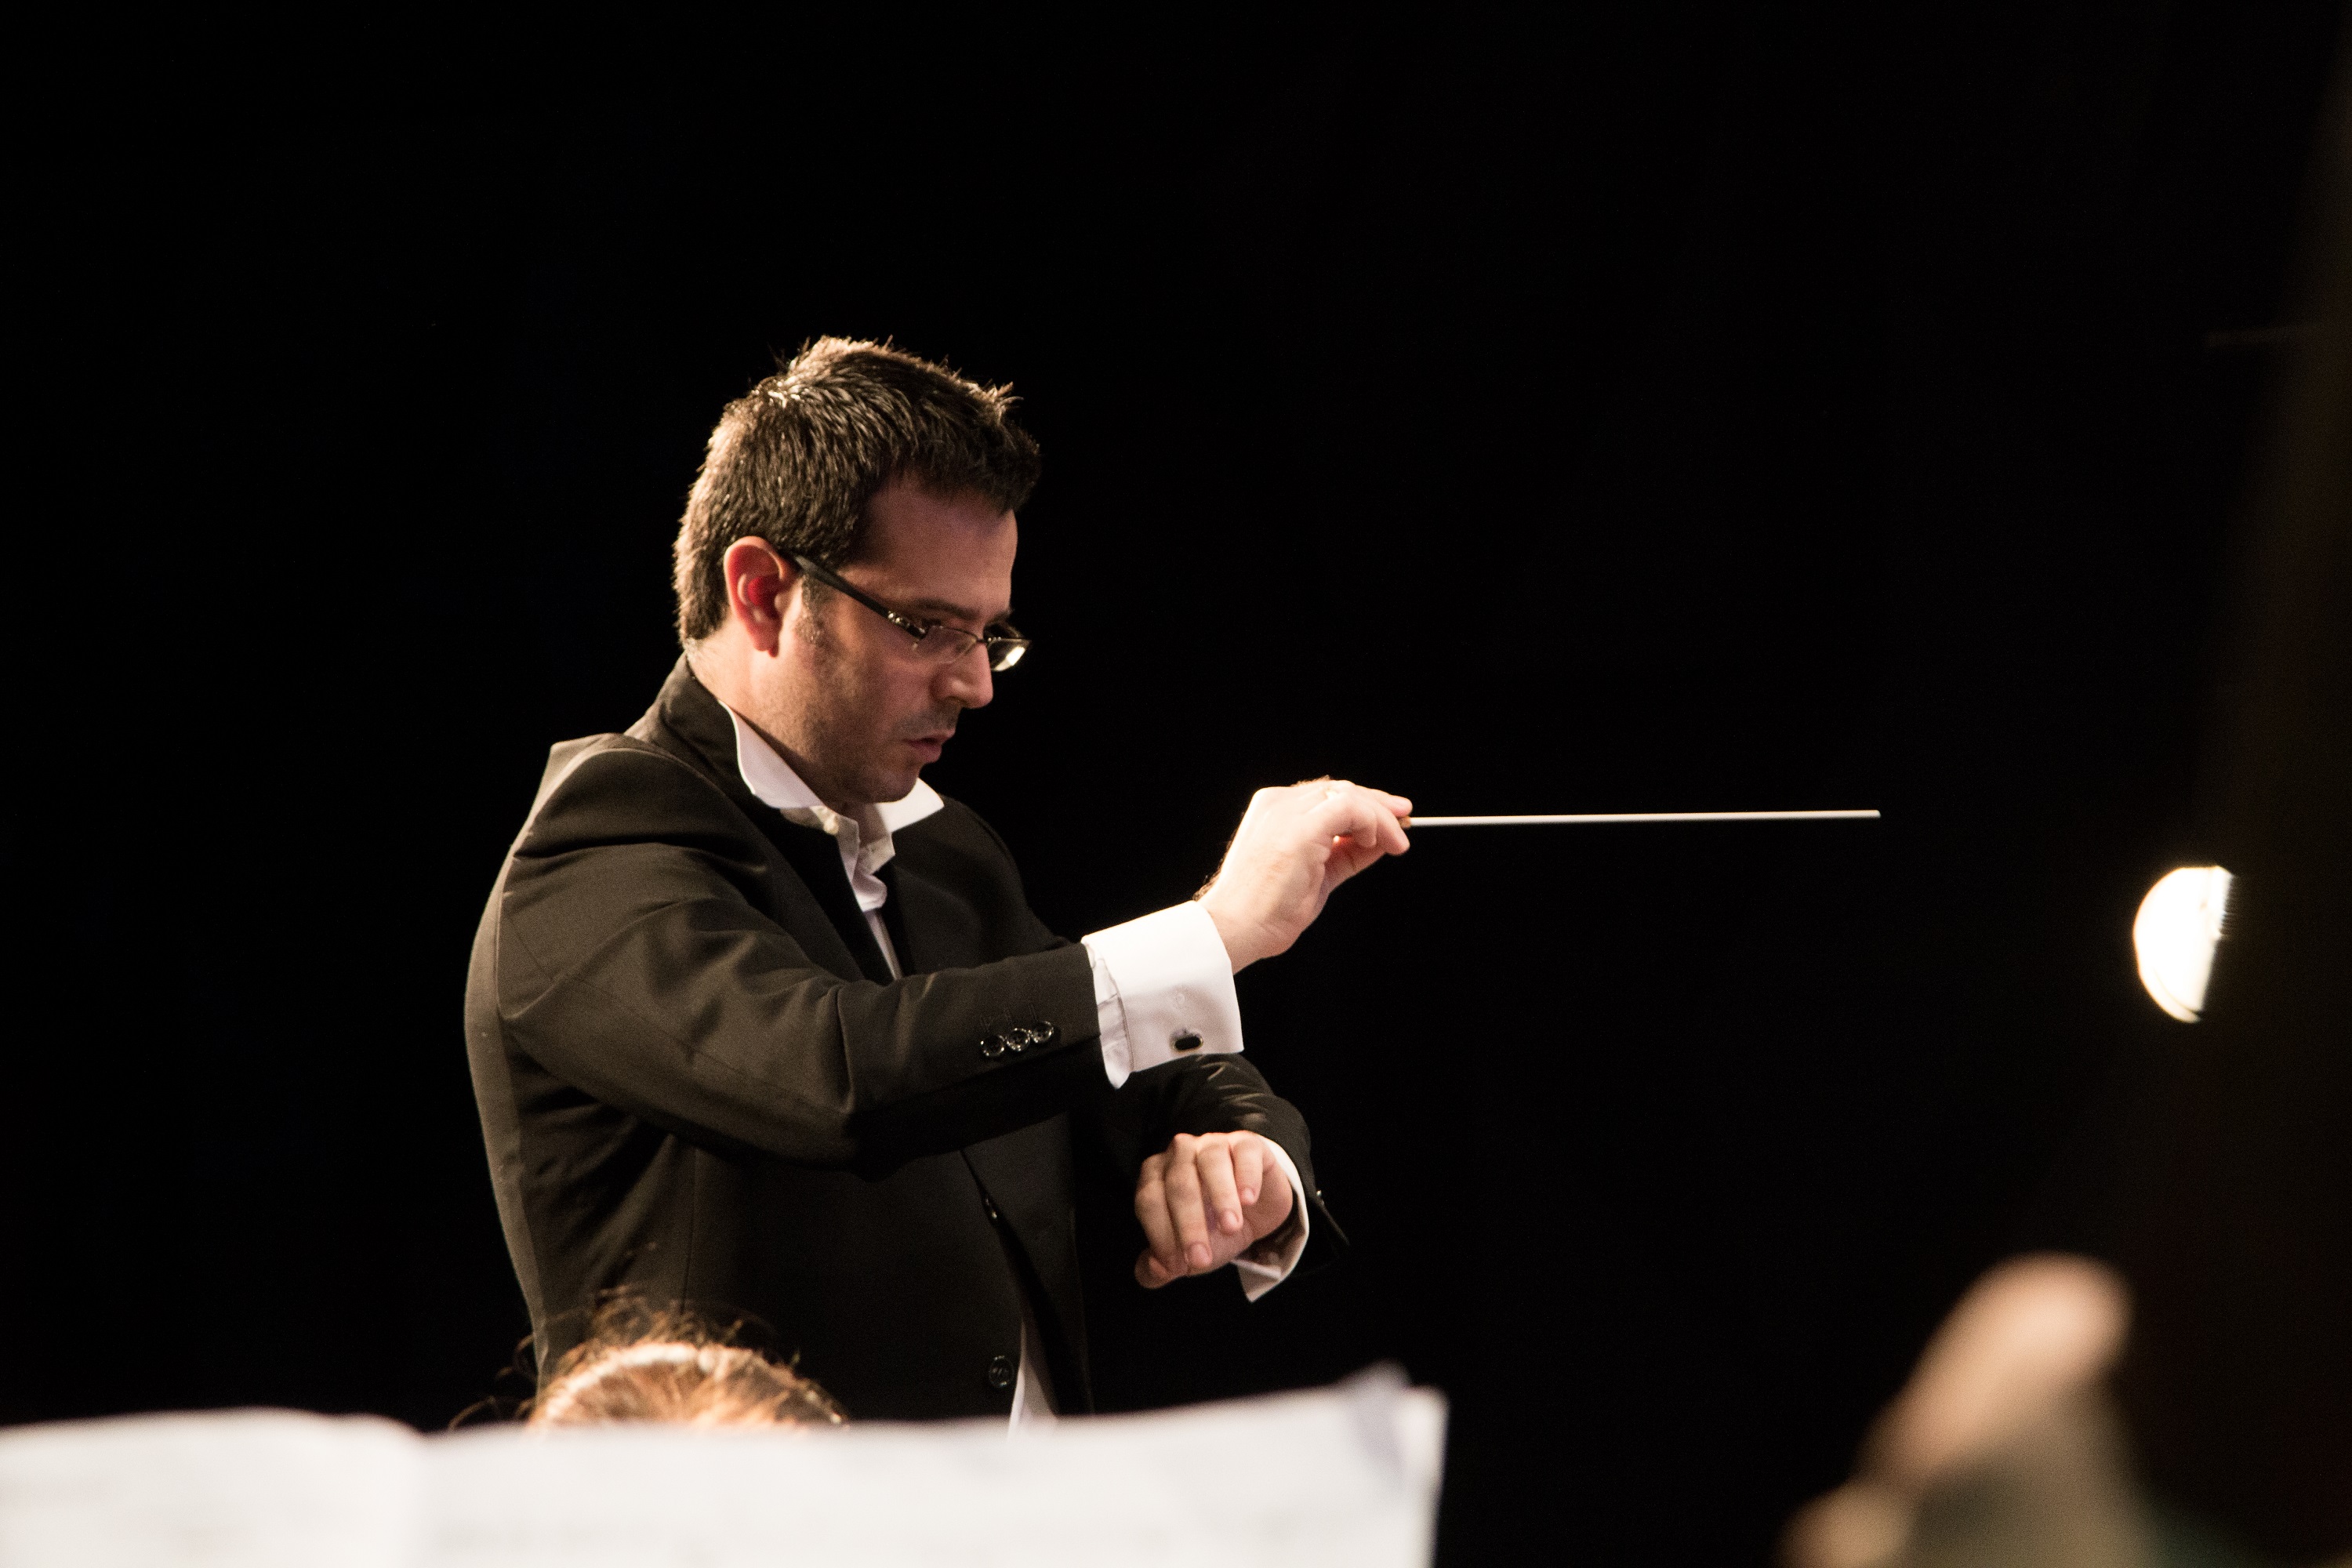 ד"ר זיו קוז'וקרו מונה למנצח הבית של הסינפונייטה הישראלית באר שבע